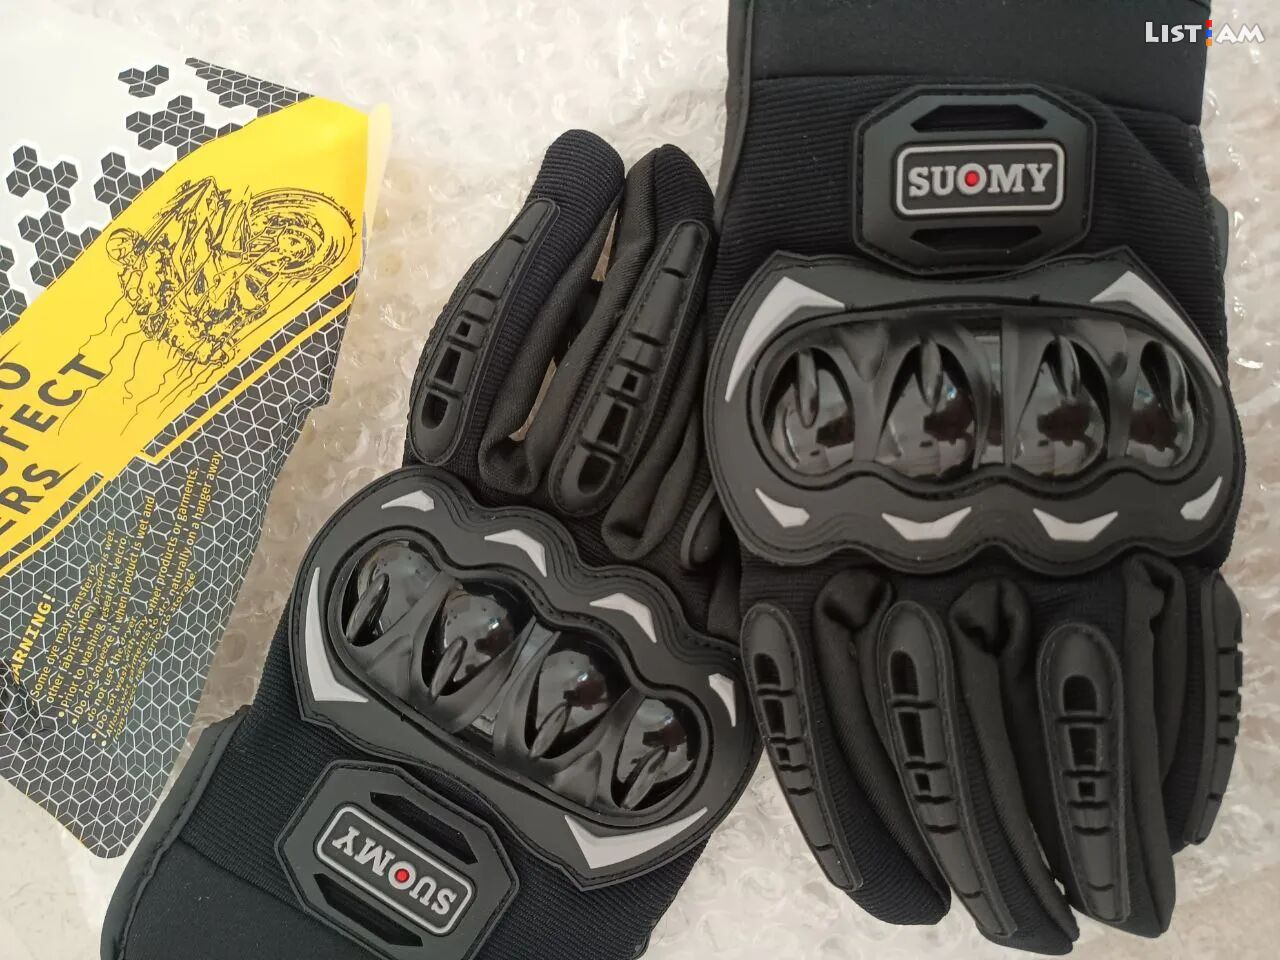 New Moto Gloves /